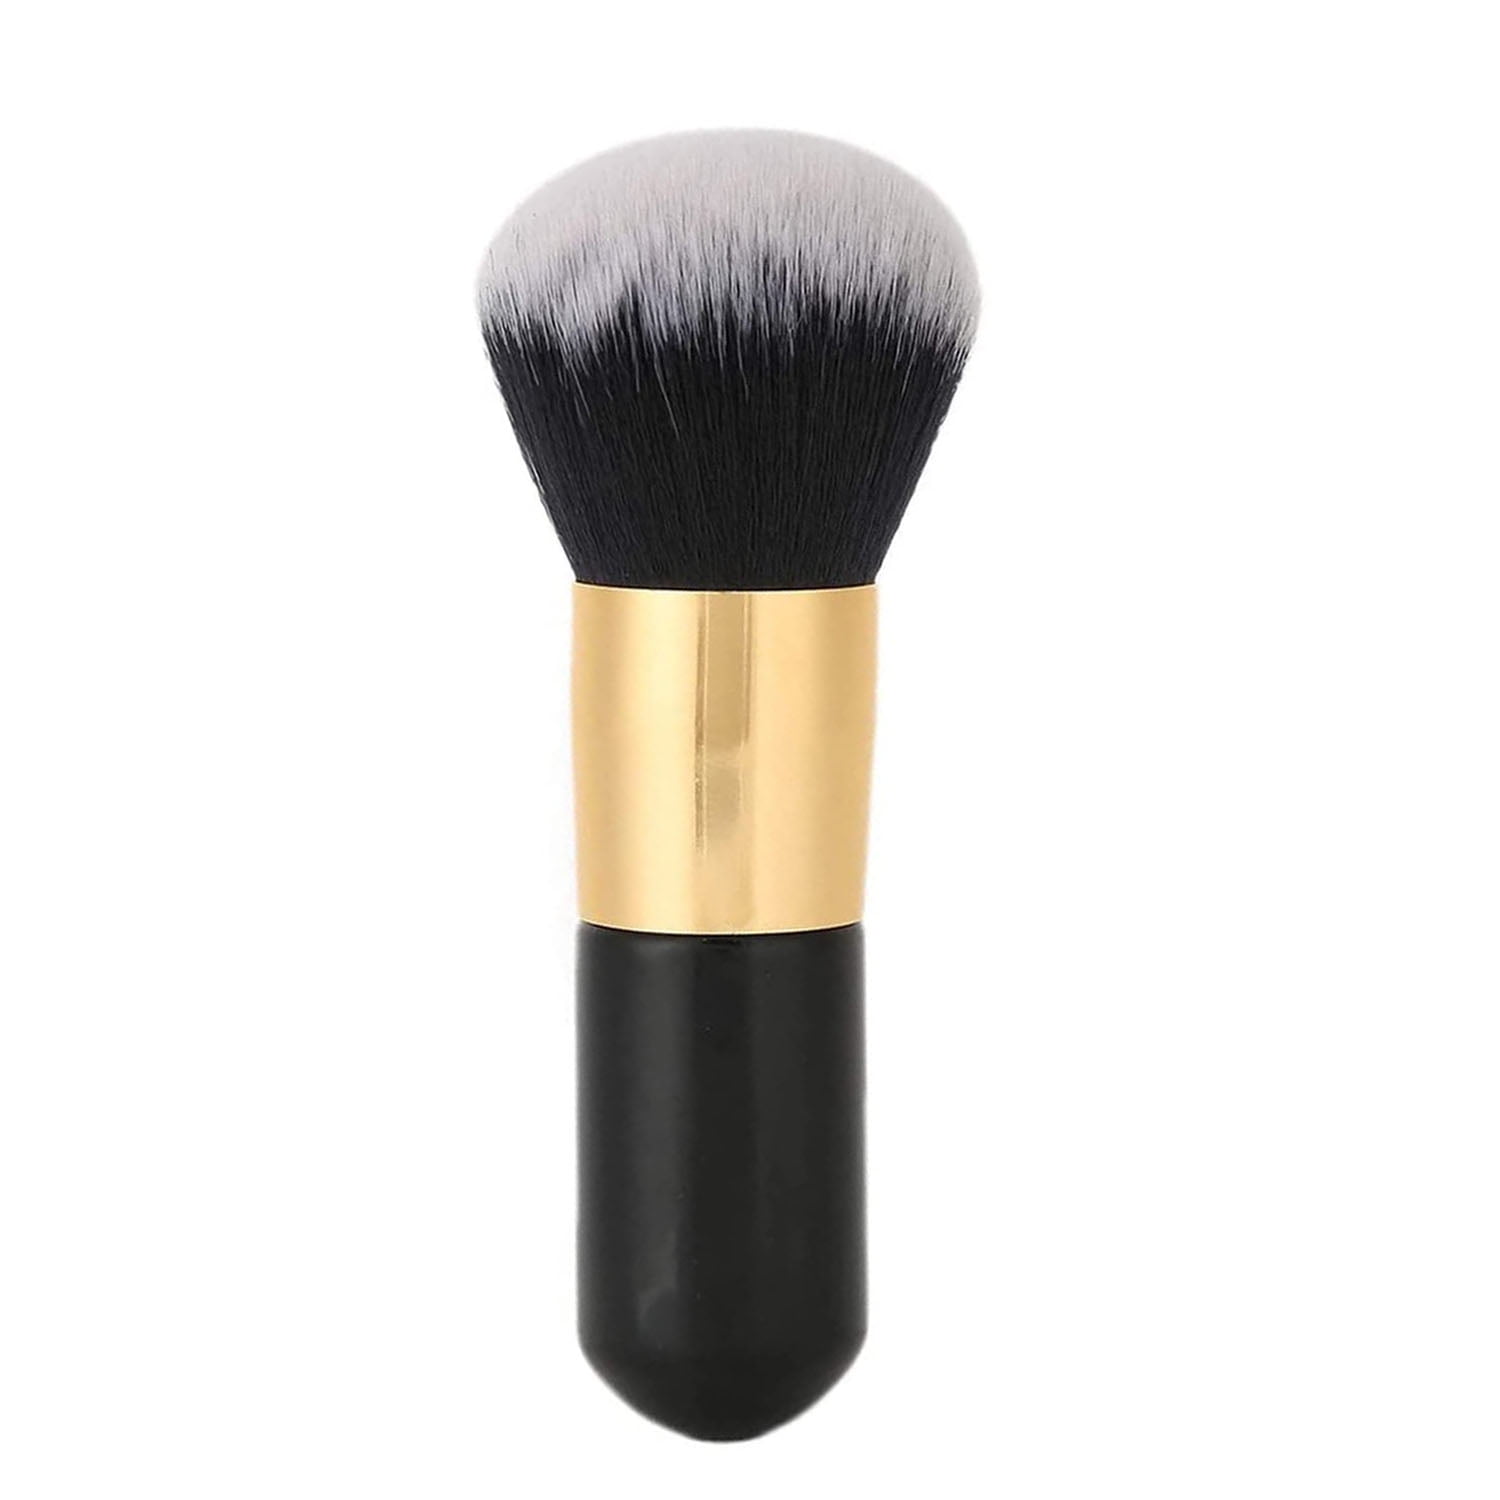 Wholesale 1pc mushroom shape powder blush makeup brush super soft  foundation angle flat kabuki brushes tool From m.